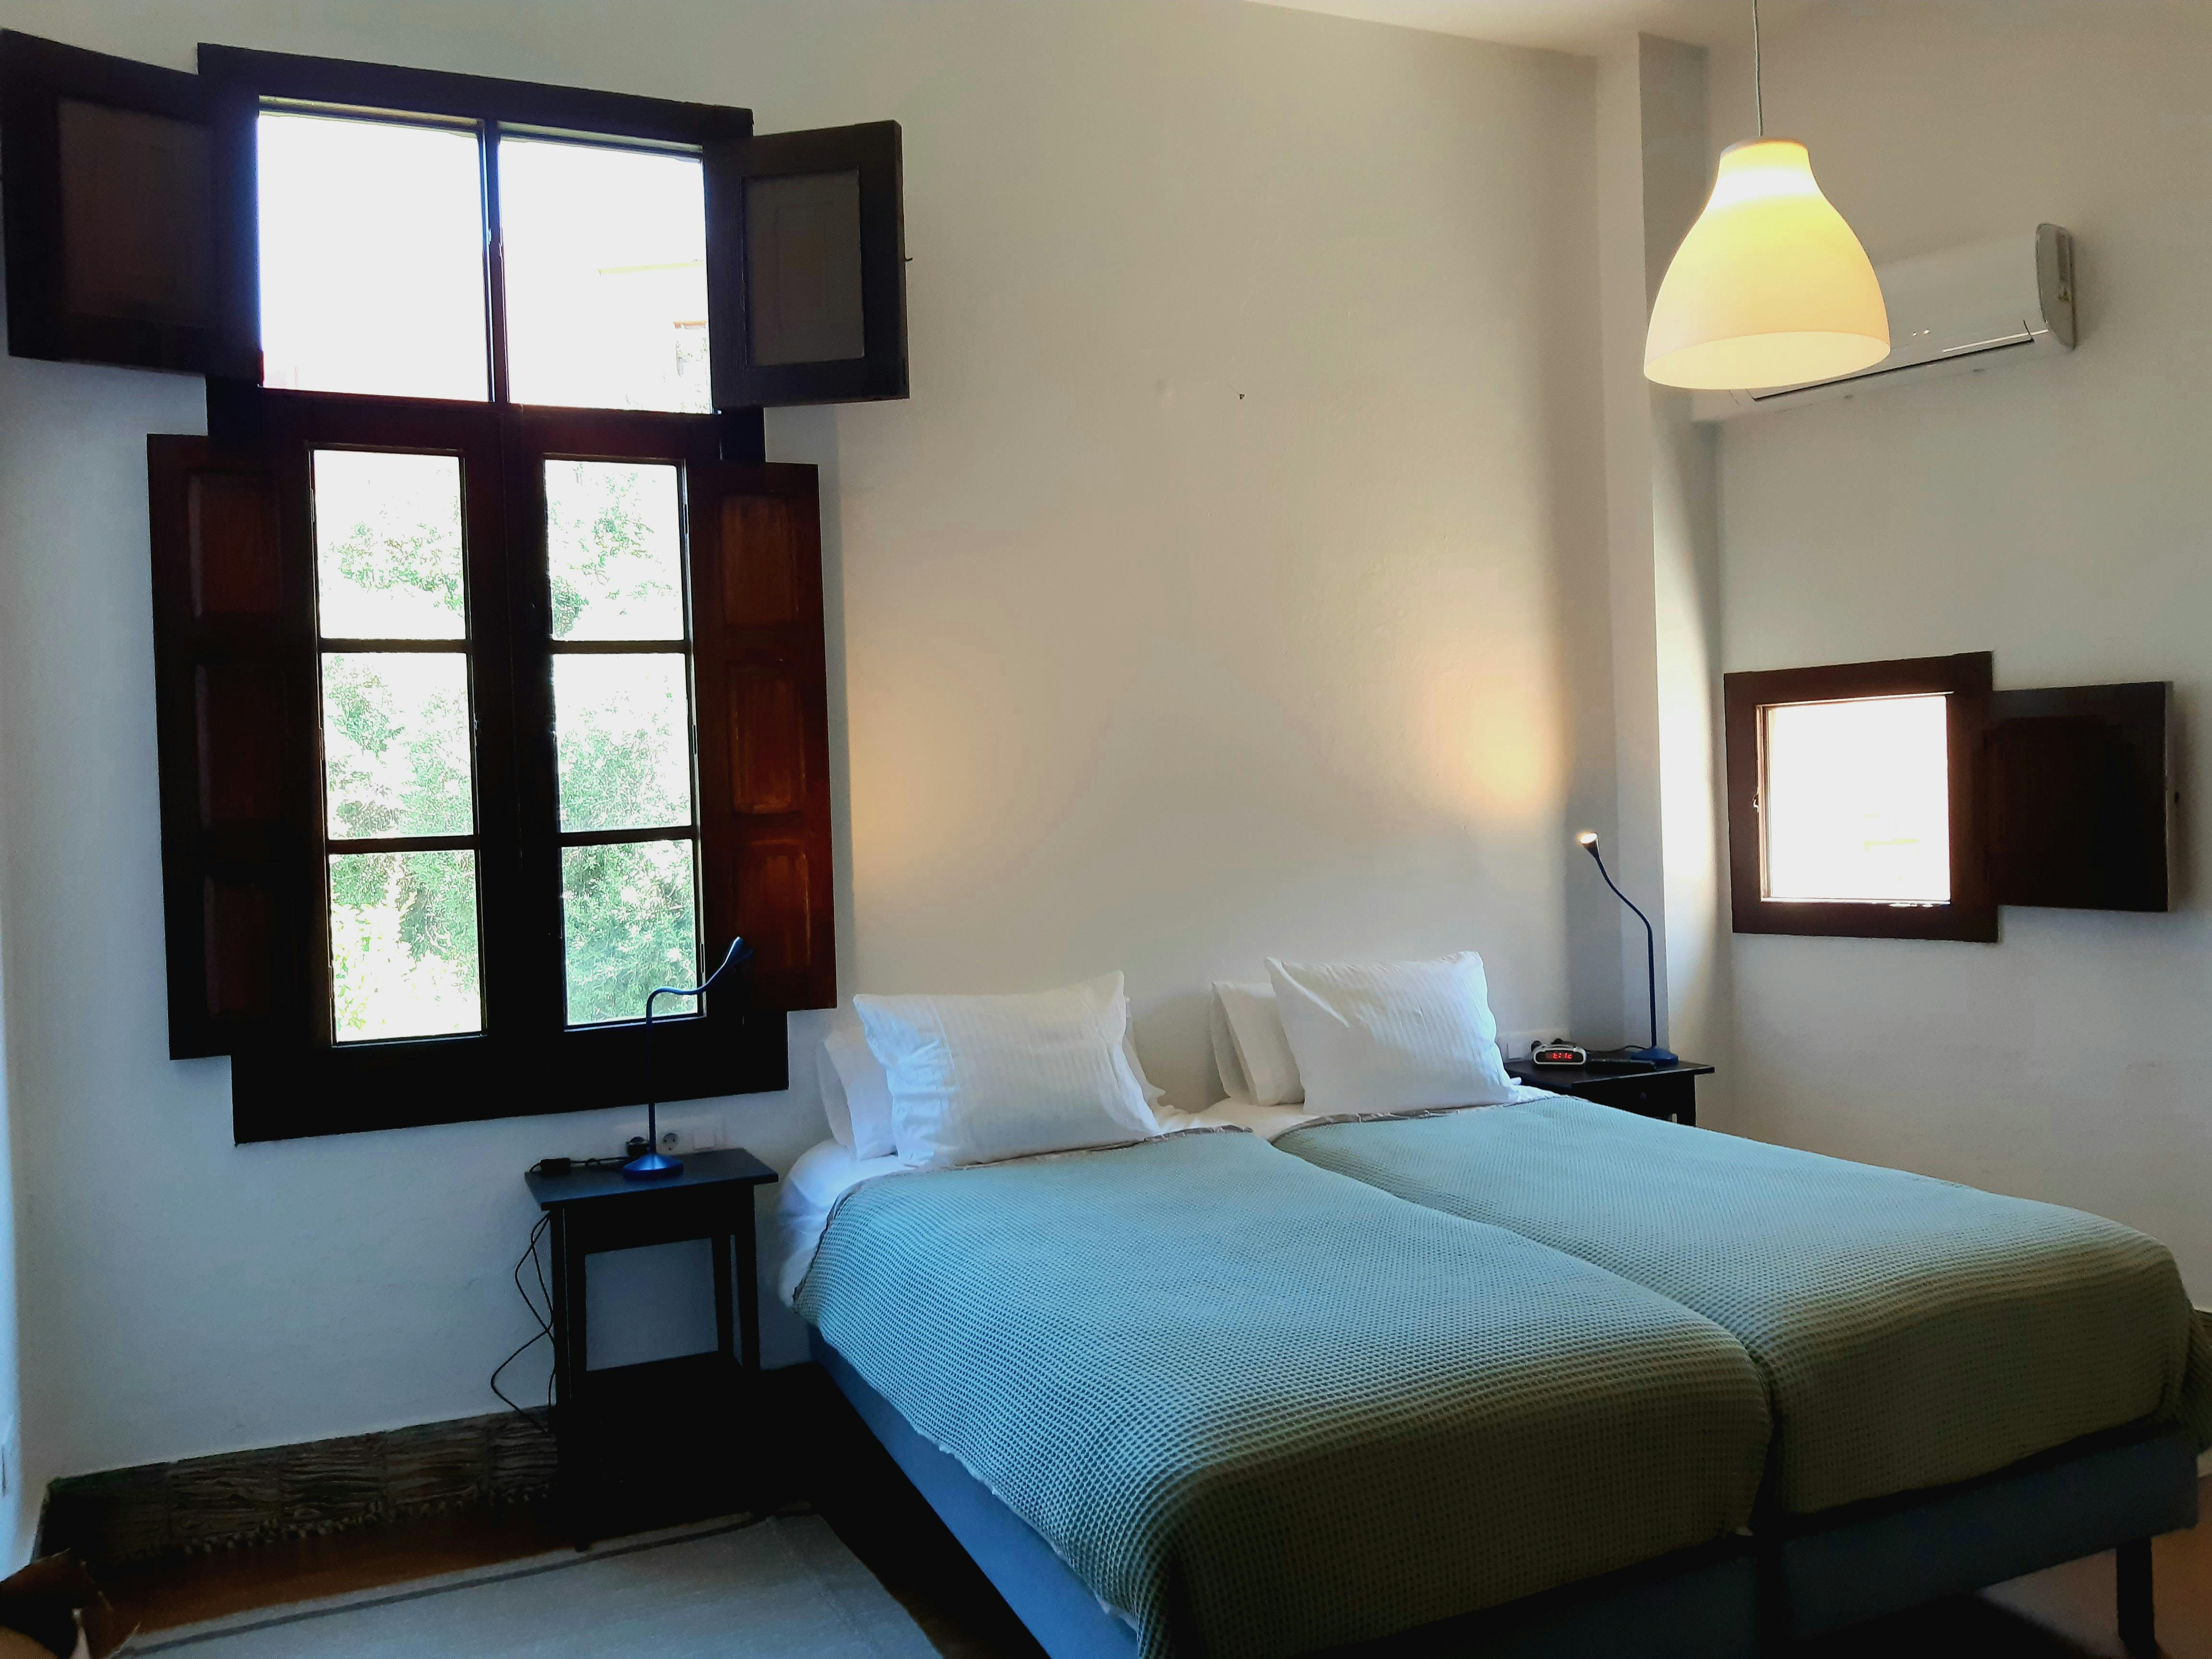 #suite #GranCanaria #hotel #boutiquehotel #luxuryhotel #islascanarias